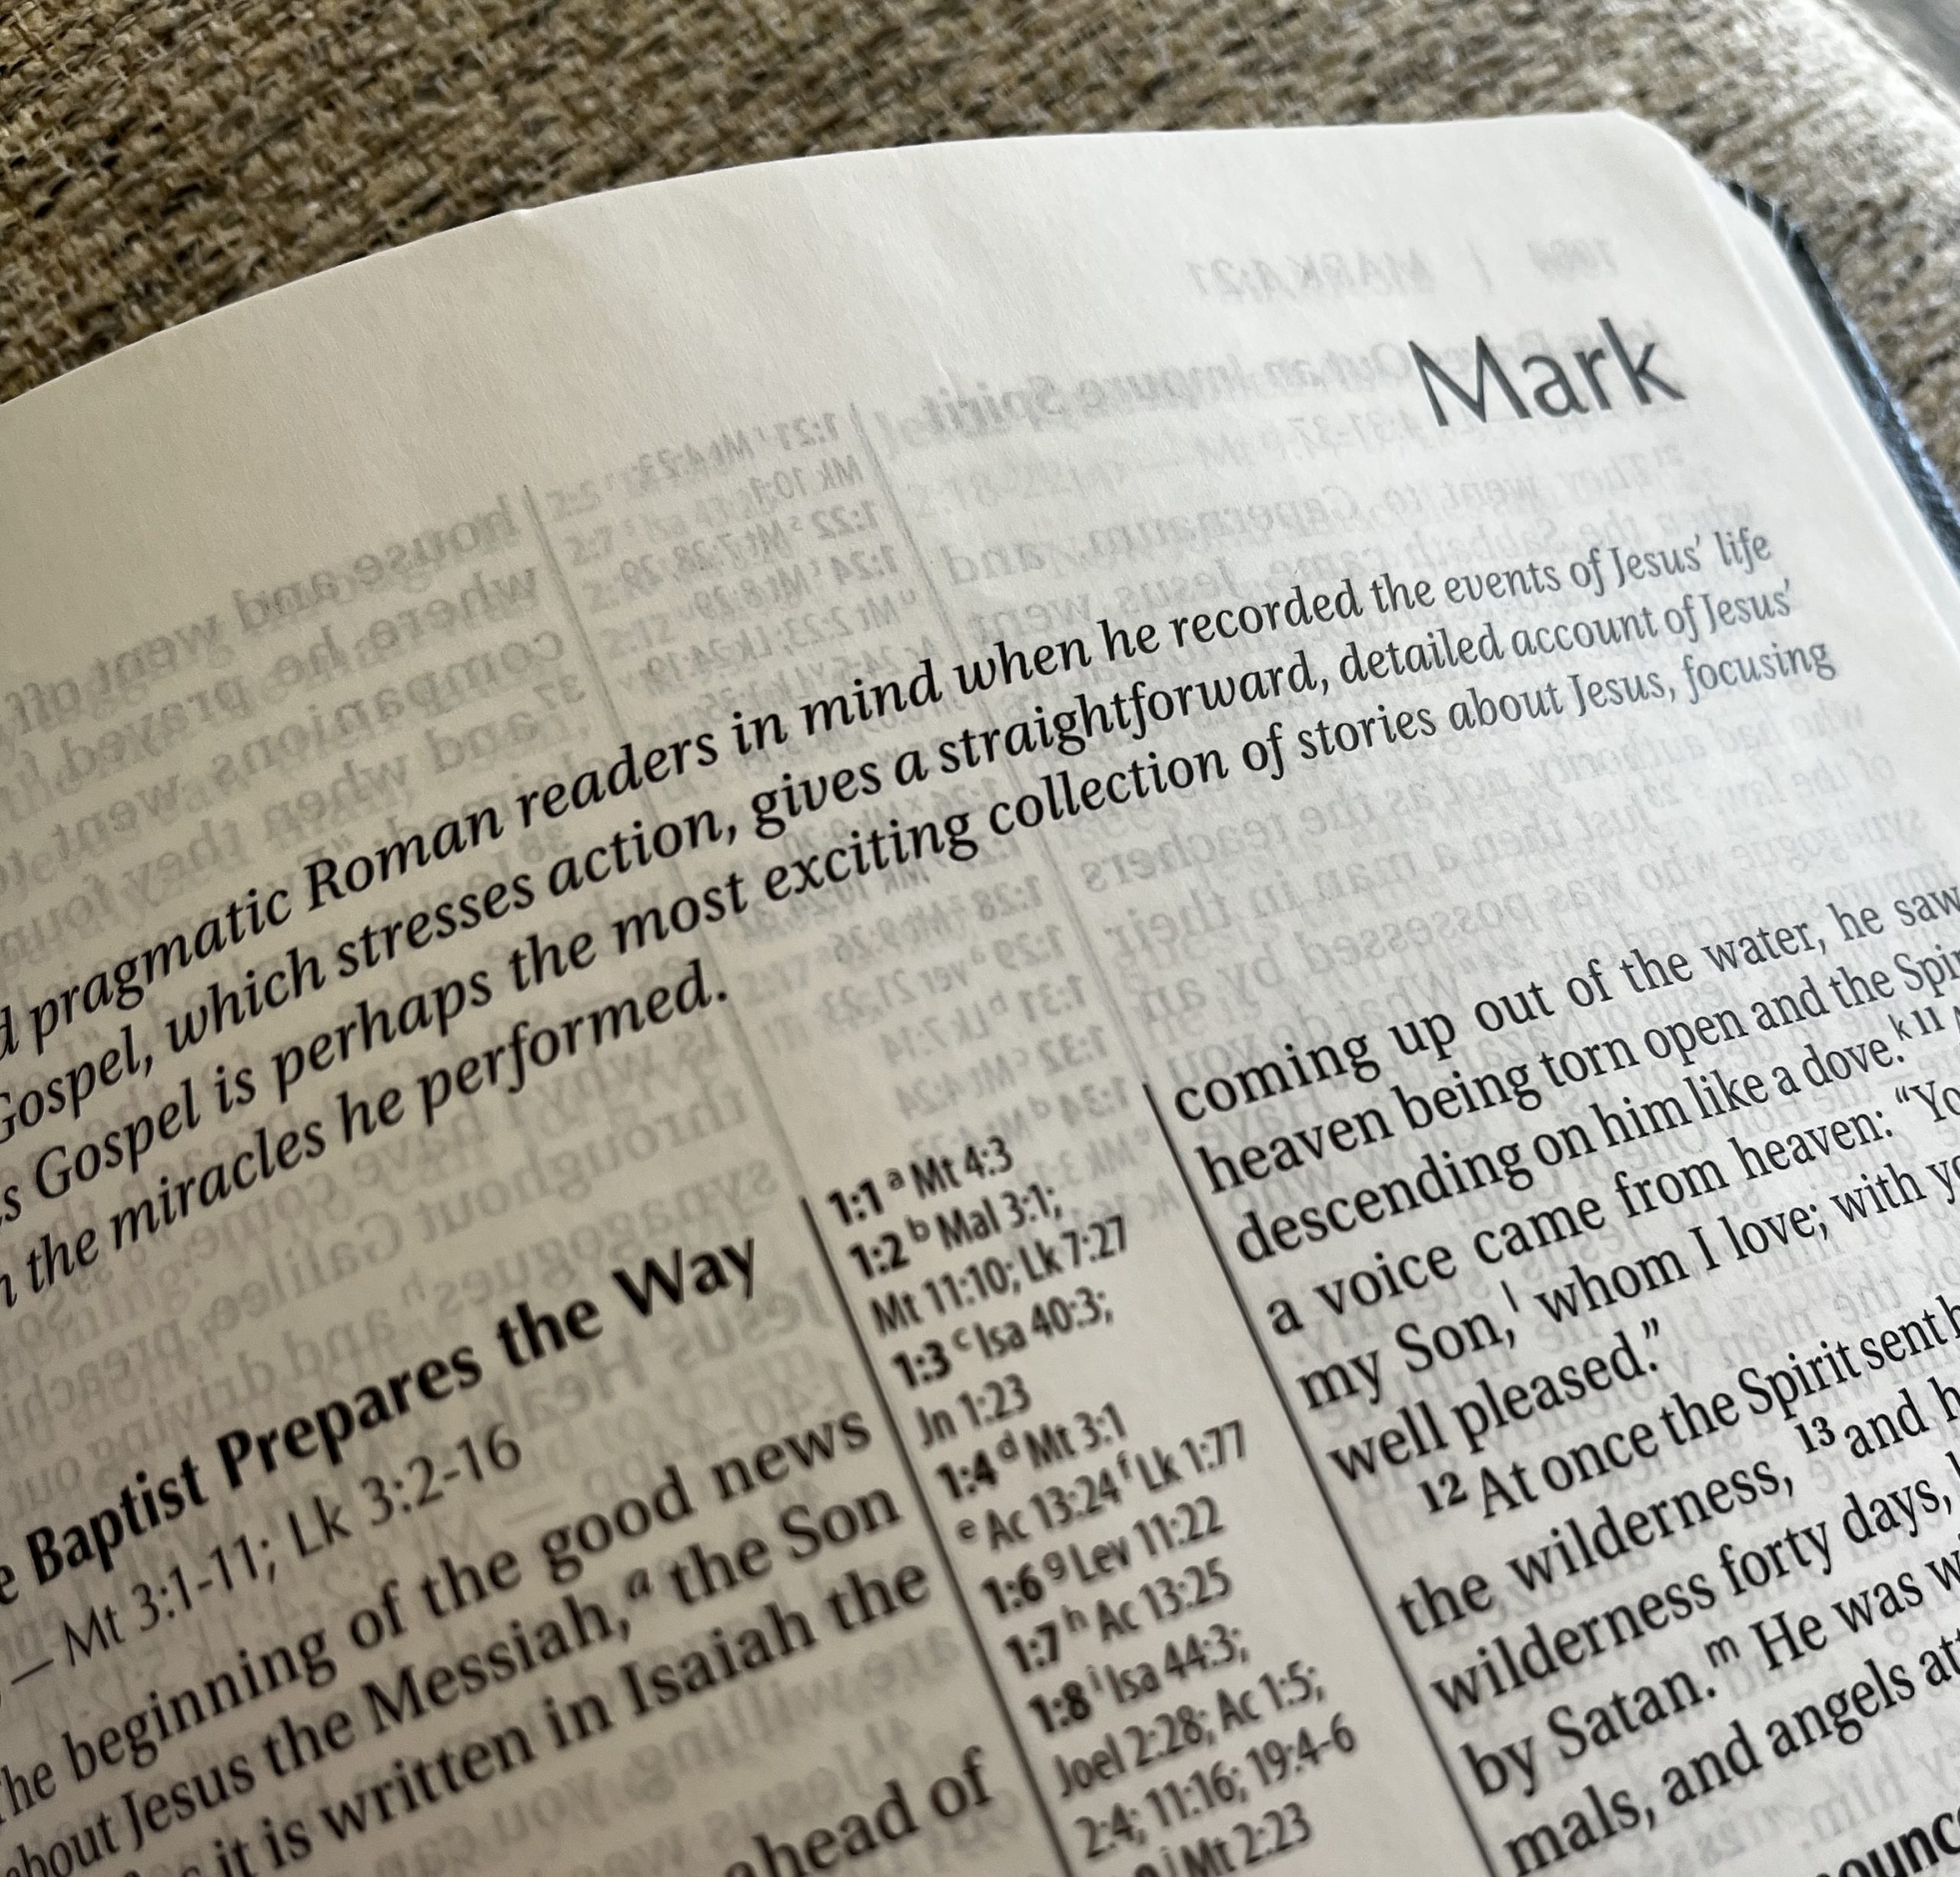 Wednesdays :: 6pm :: Study on the Gospel of Mark :: Begins Sept 7